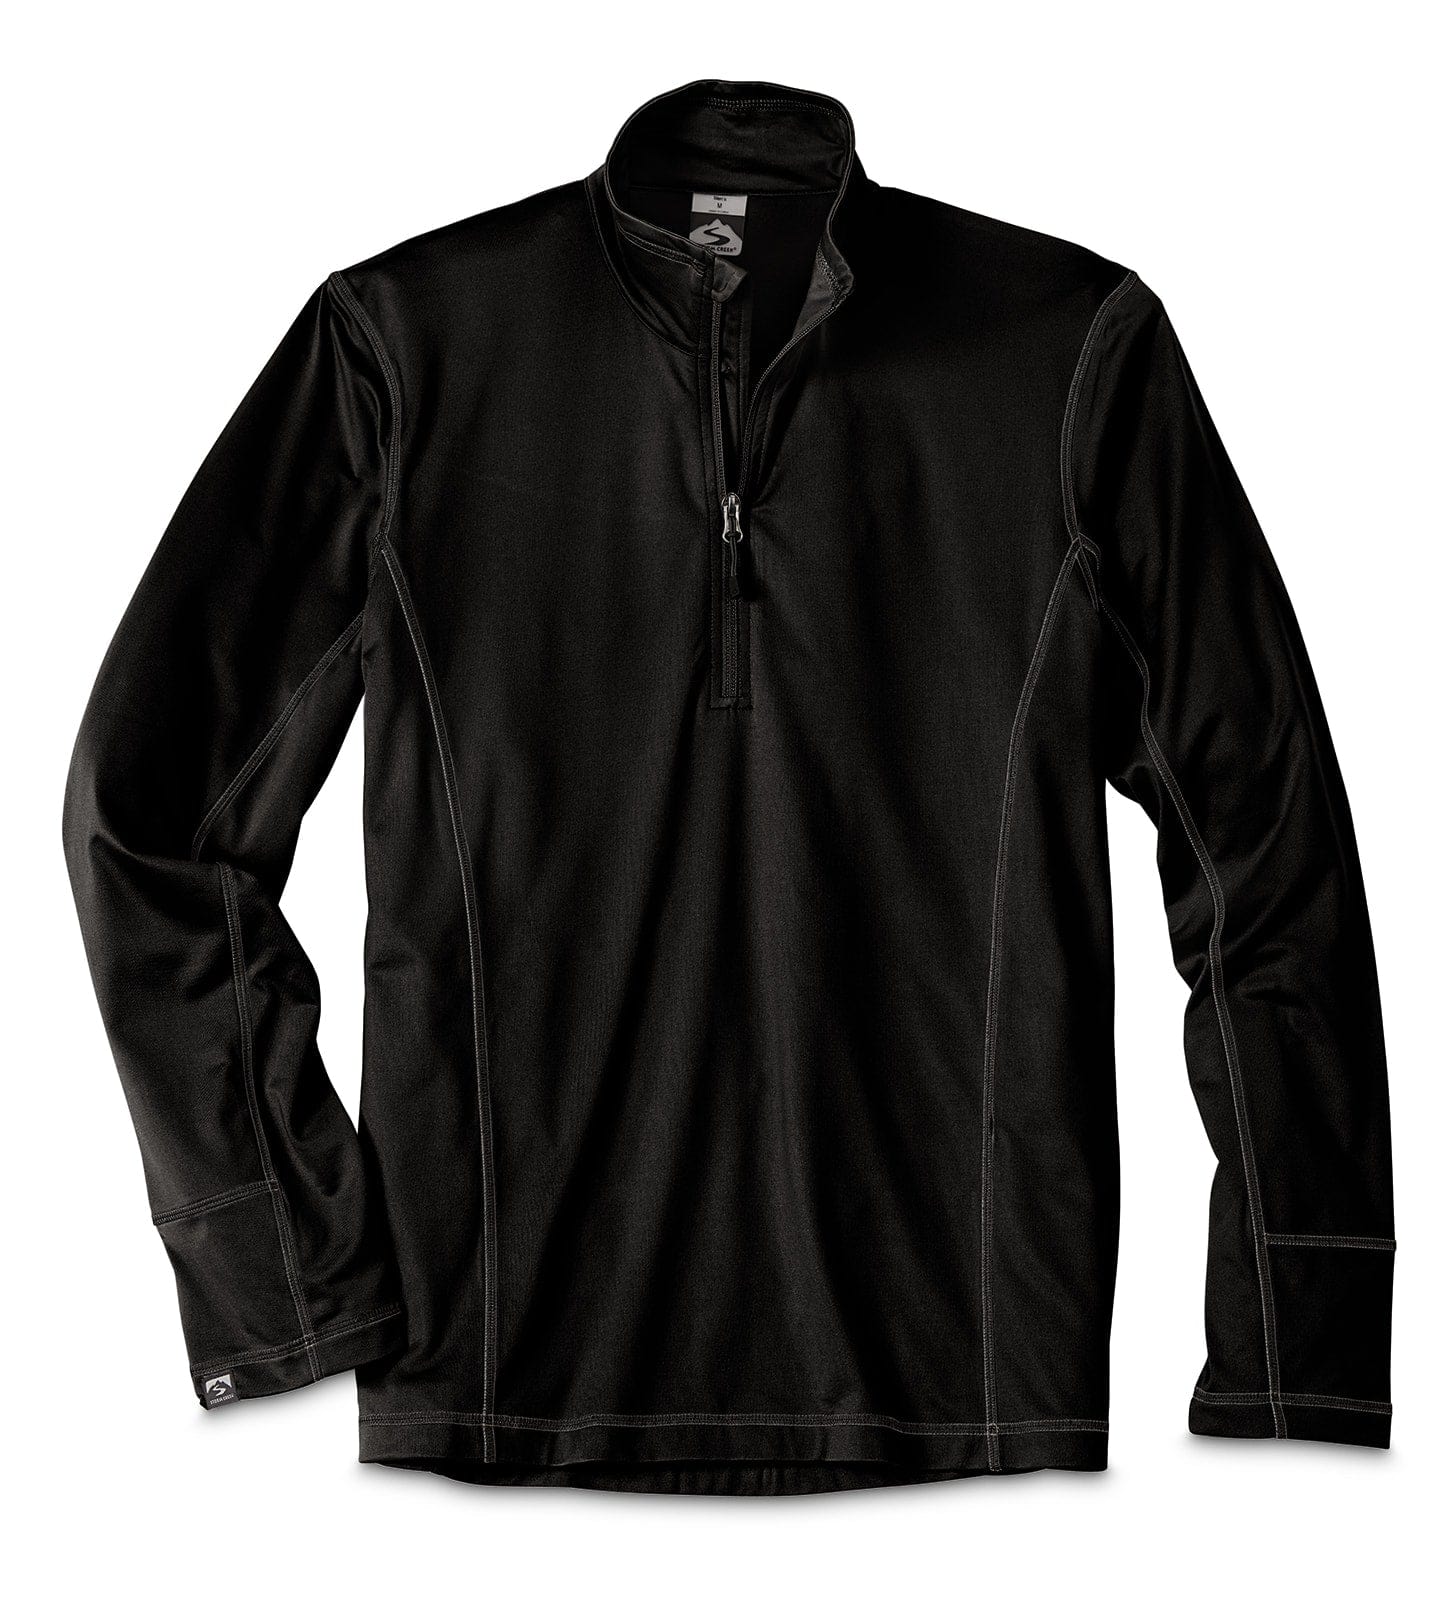 Customizable Storm Creek® Men's Adapter in black.